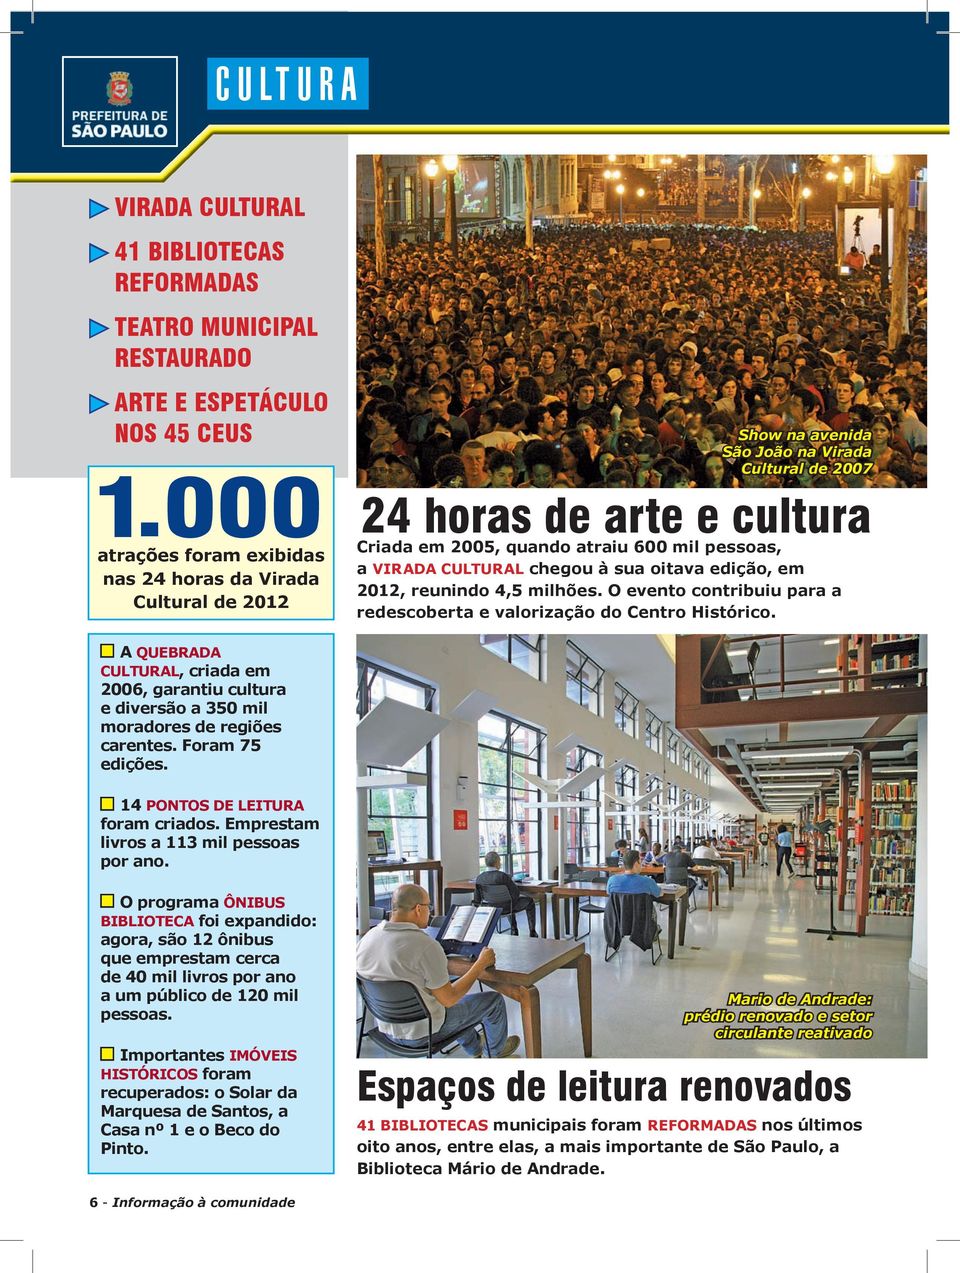 VIRADA CULTURAL chegou à sua oitava edição, em 2012, reunindo 4,5 milhões. O evento contribuiu para a redescoberta e valorização do Centro Histórico.